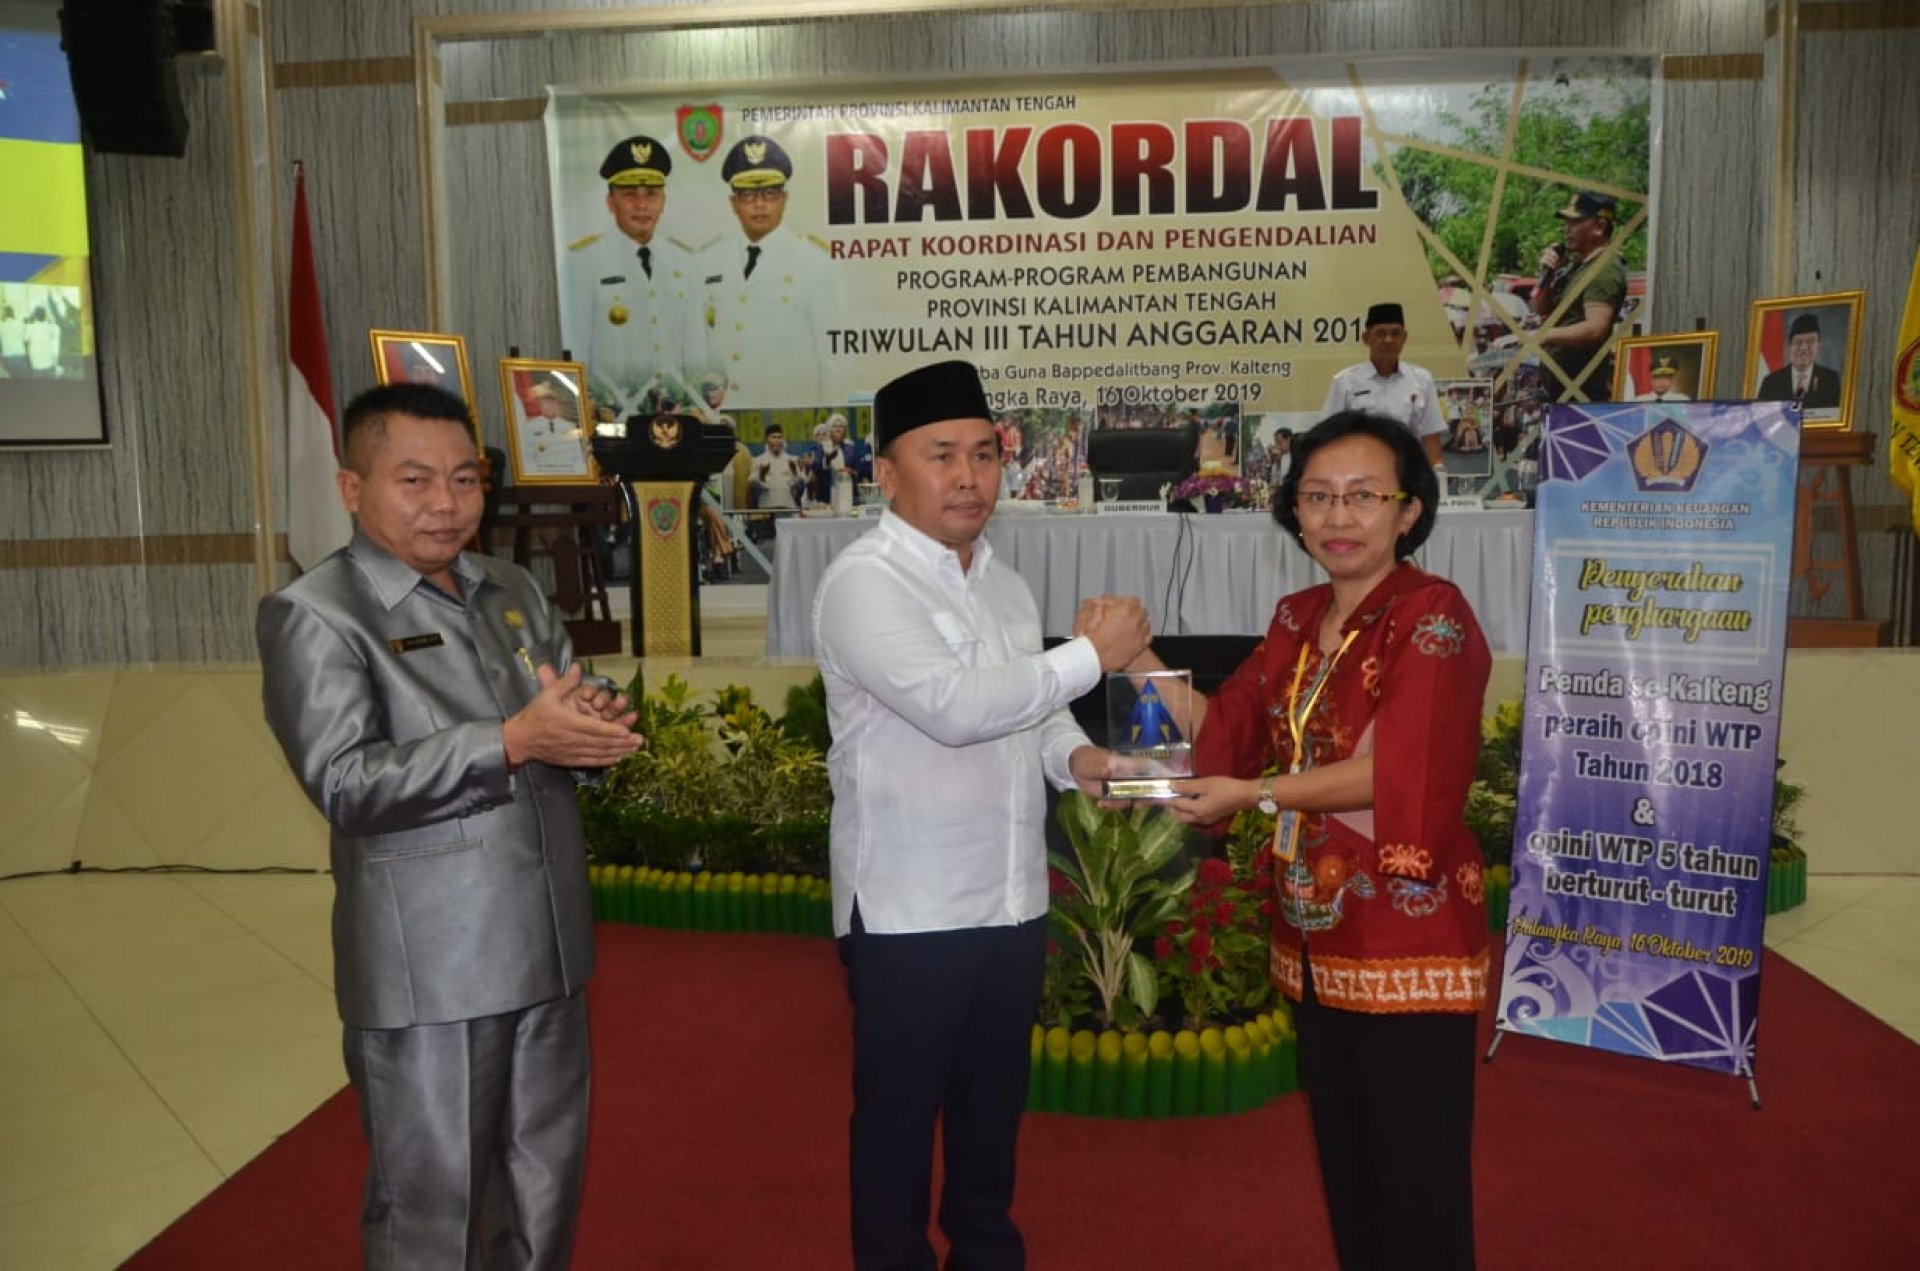 Pembukaan Rapat Koordinasi dan Pengendalian (Rakordal) Triwulan III Tahun Anggaran 2019 Provinsi Kalimantan Tengah